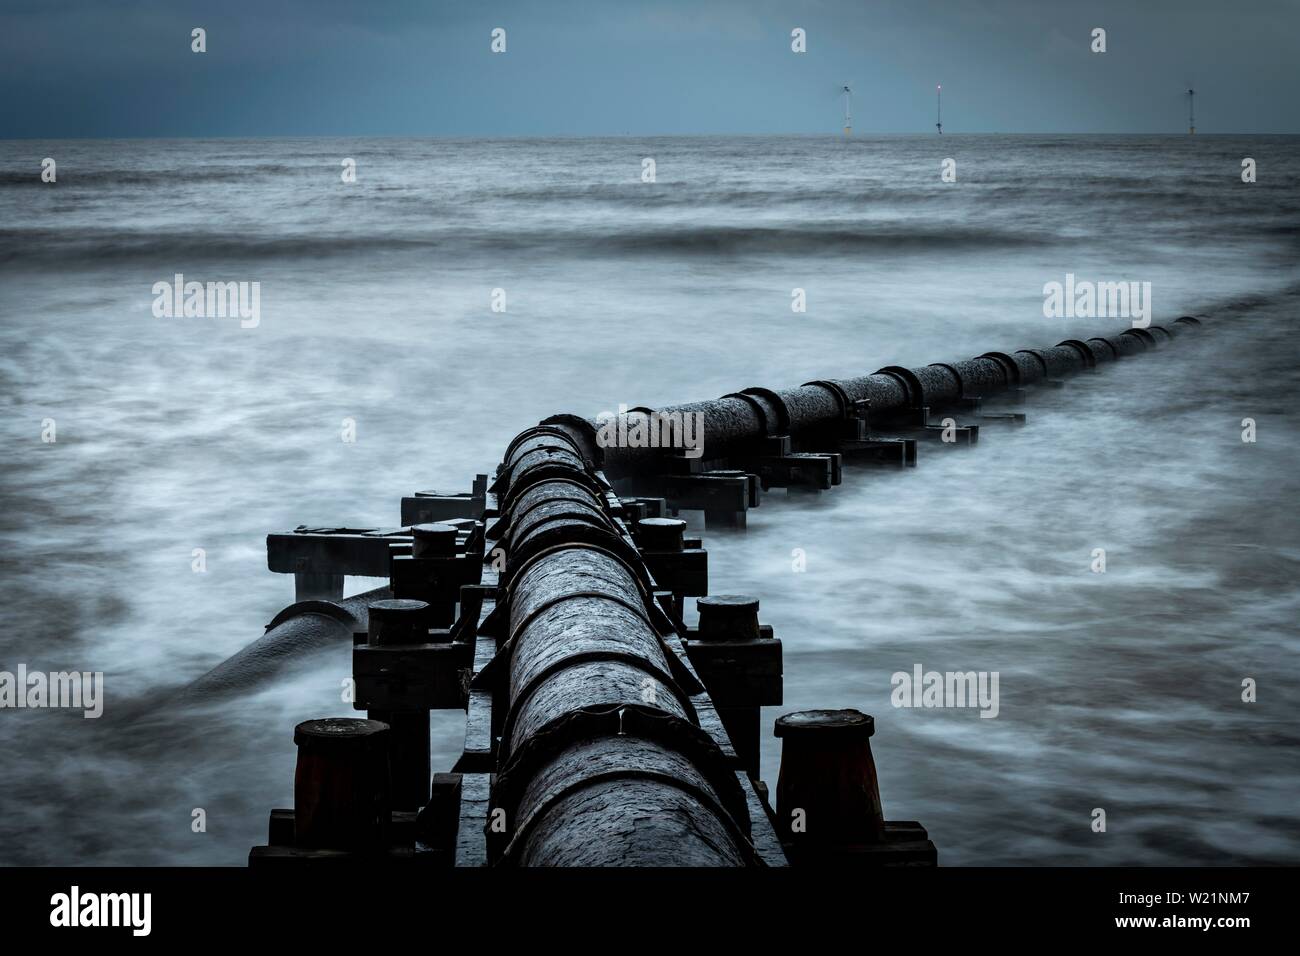 Tubo de hierro oxidadas, tubo de aguas residuales en el mar navegar bajo un cielo oscuro, Blyth, Northumberland, Gran Bretaña Foto de stock